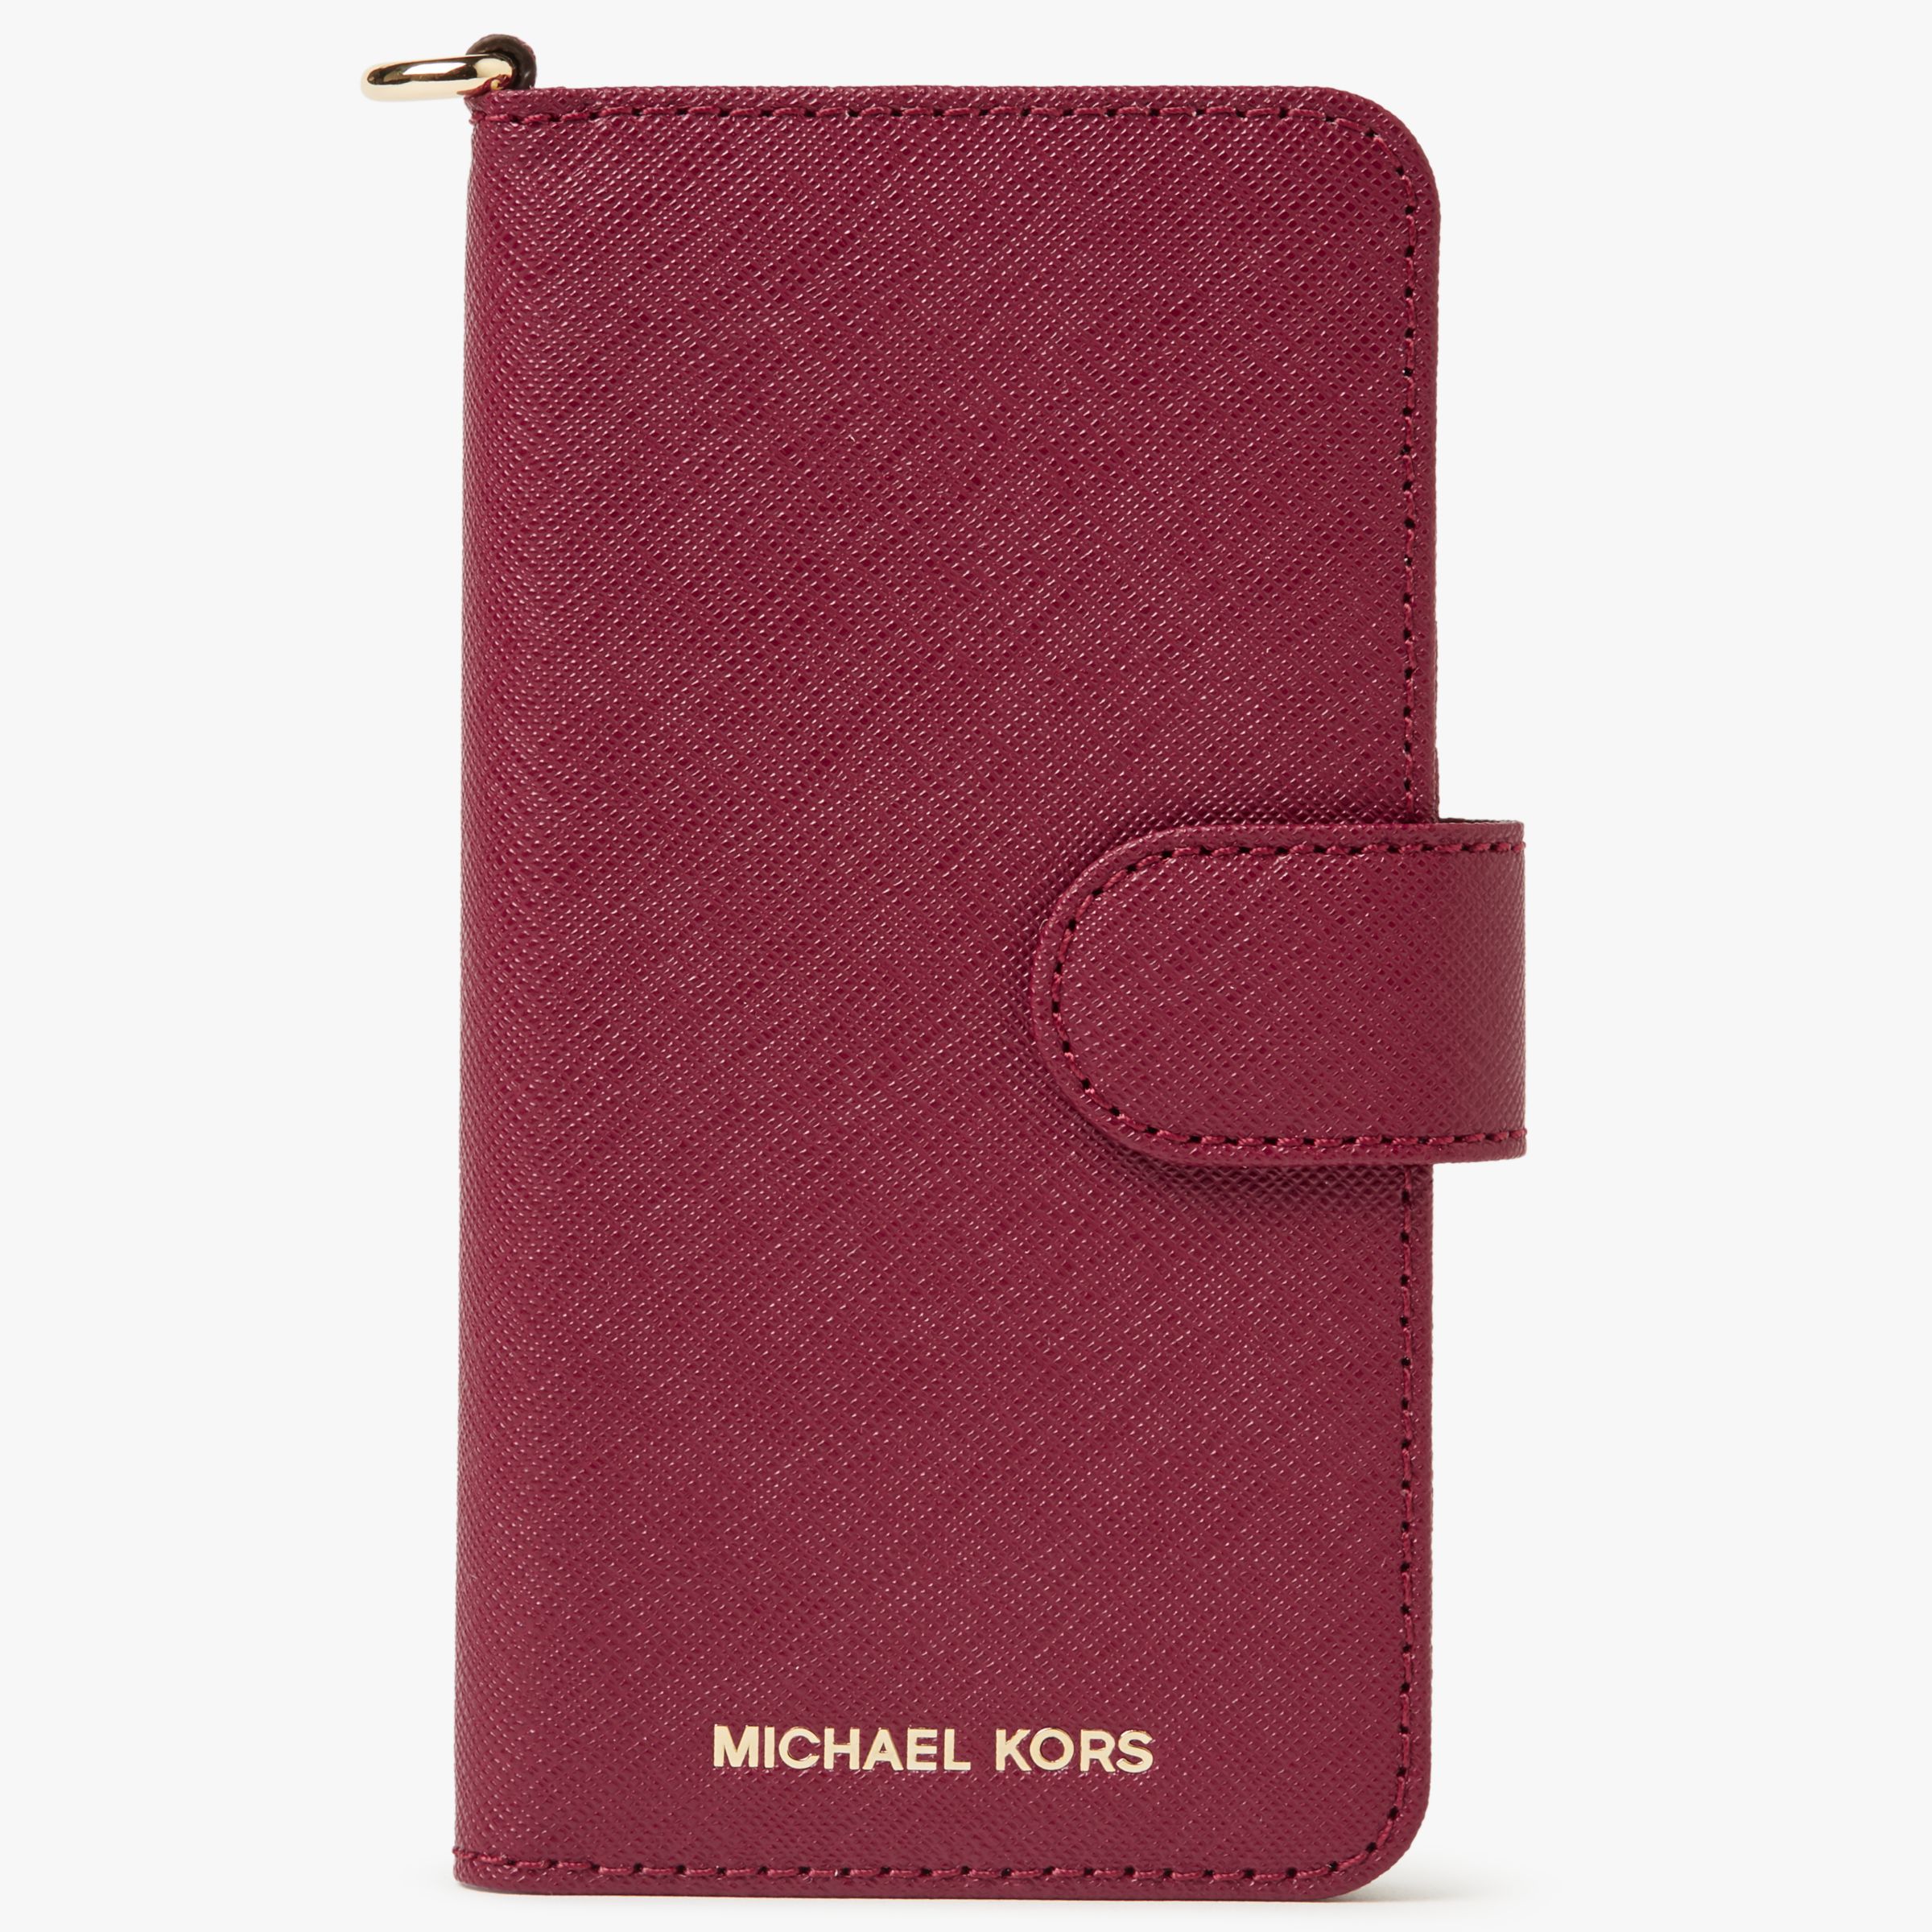 michael kors iphone 6 plus wallet case